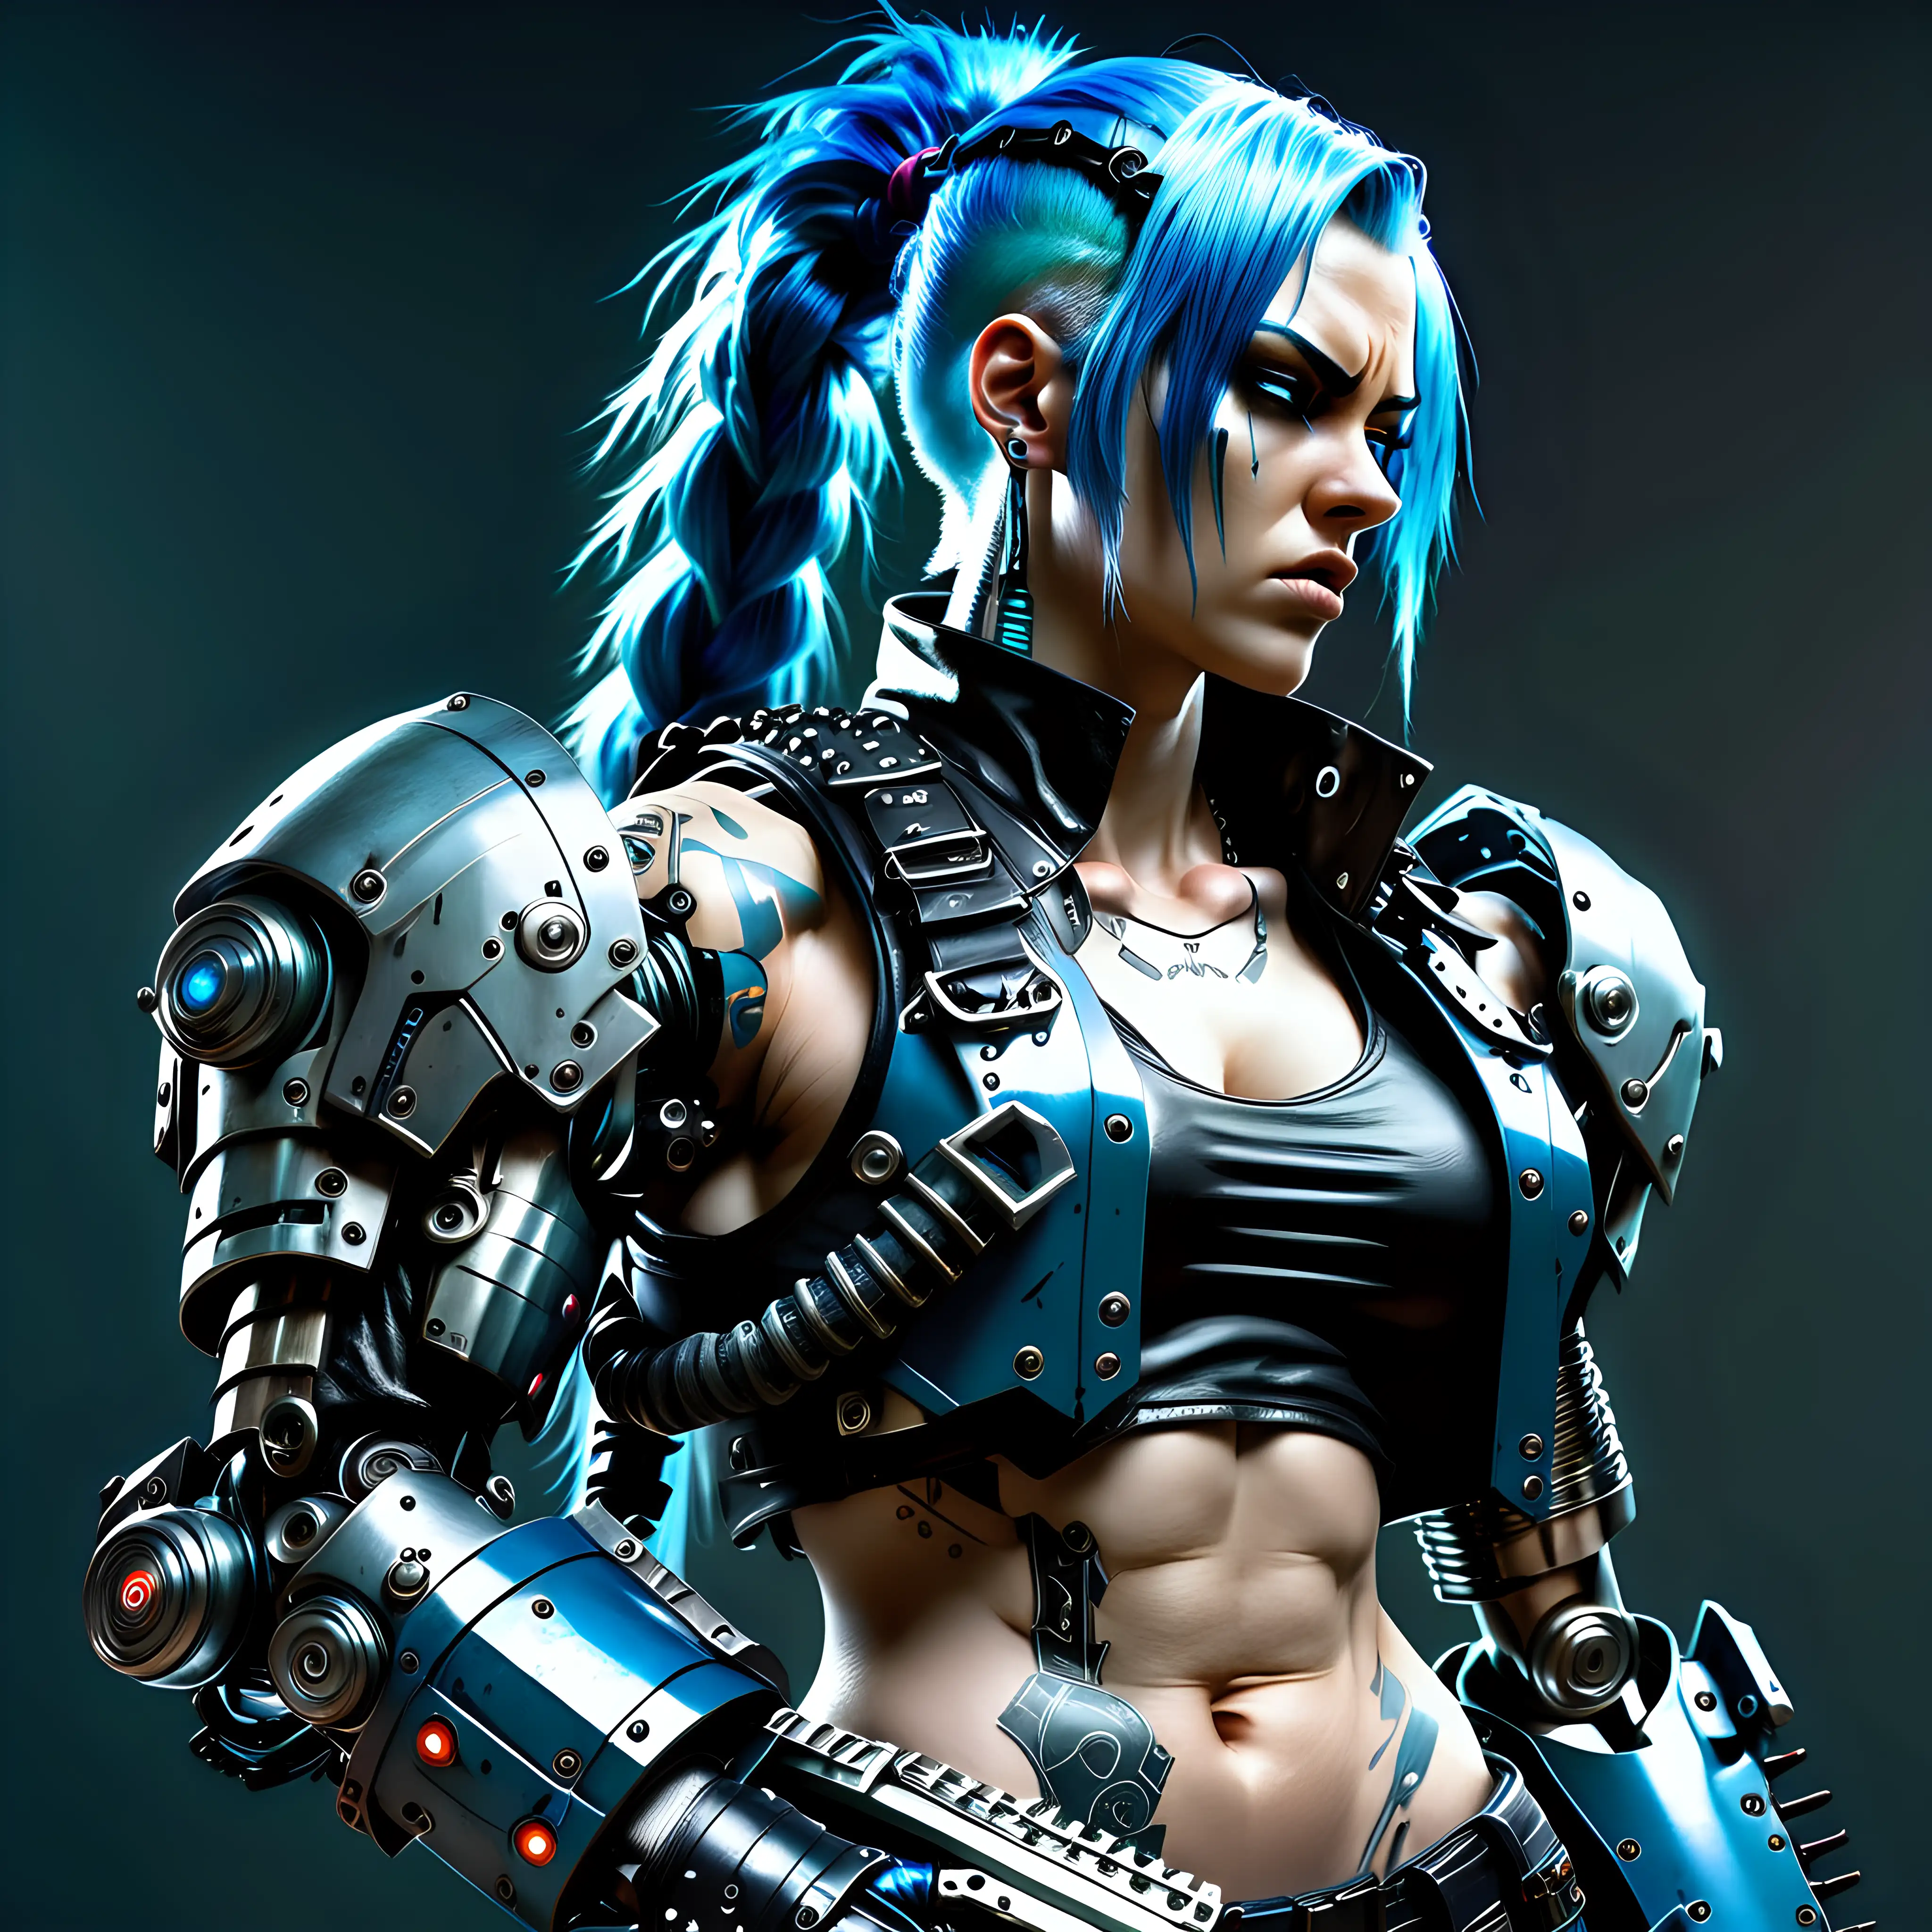 Fierce Androgynous Cyberpunk Mercenary with Robotic Arm